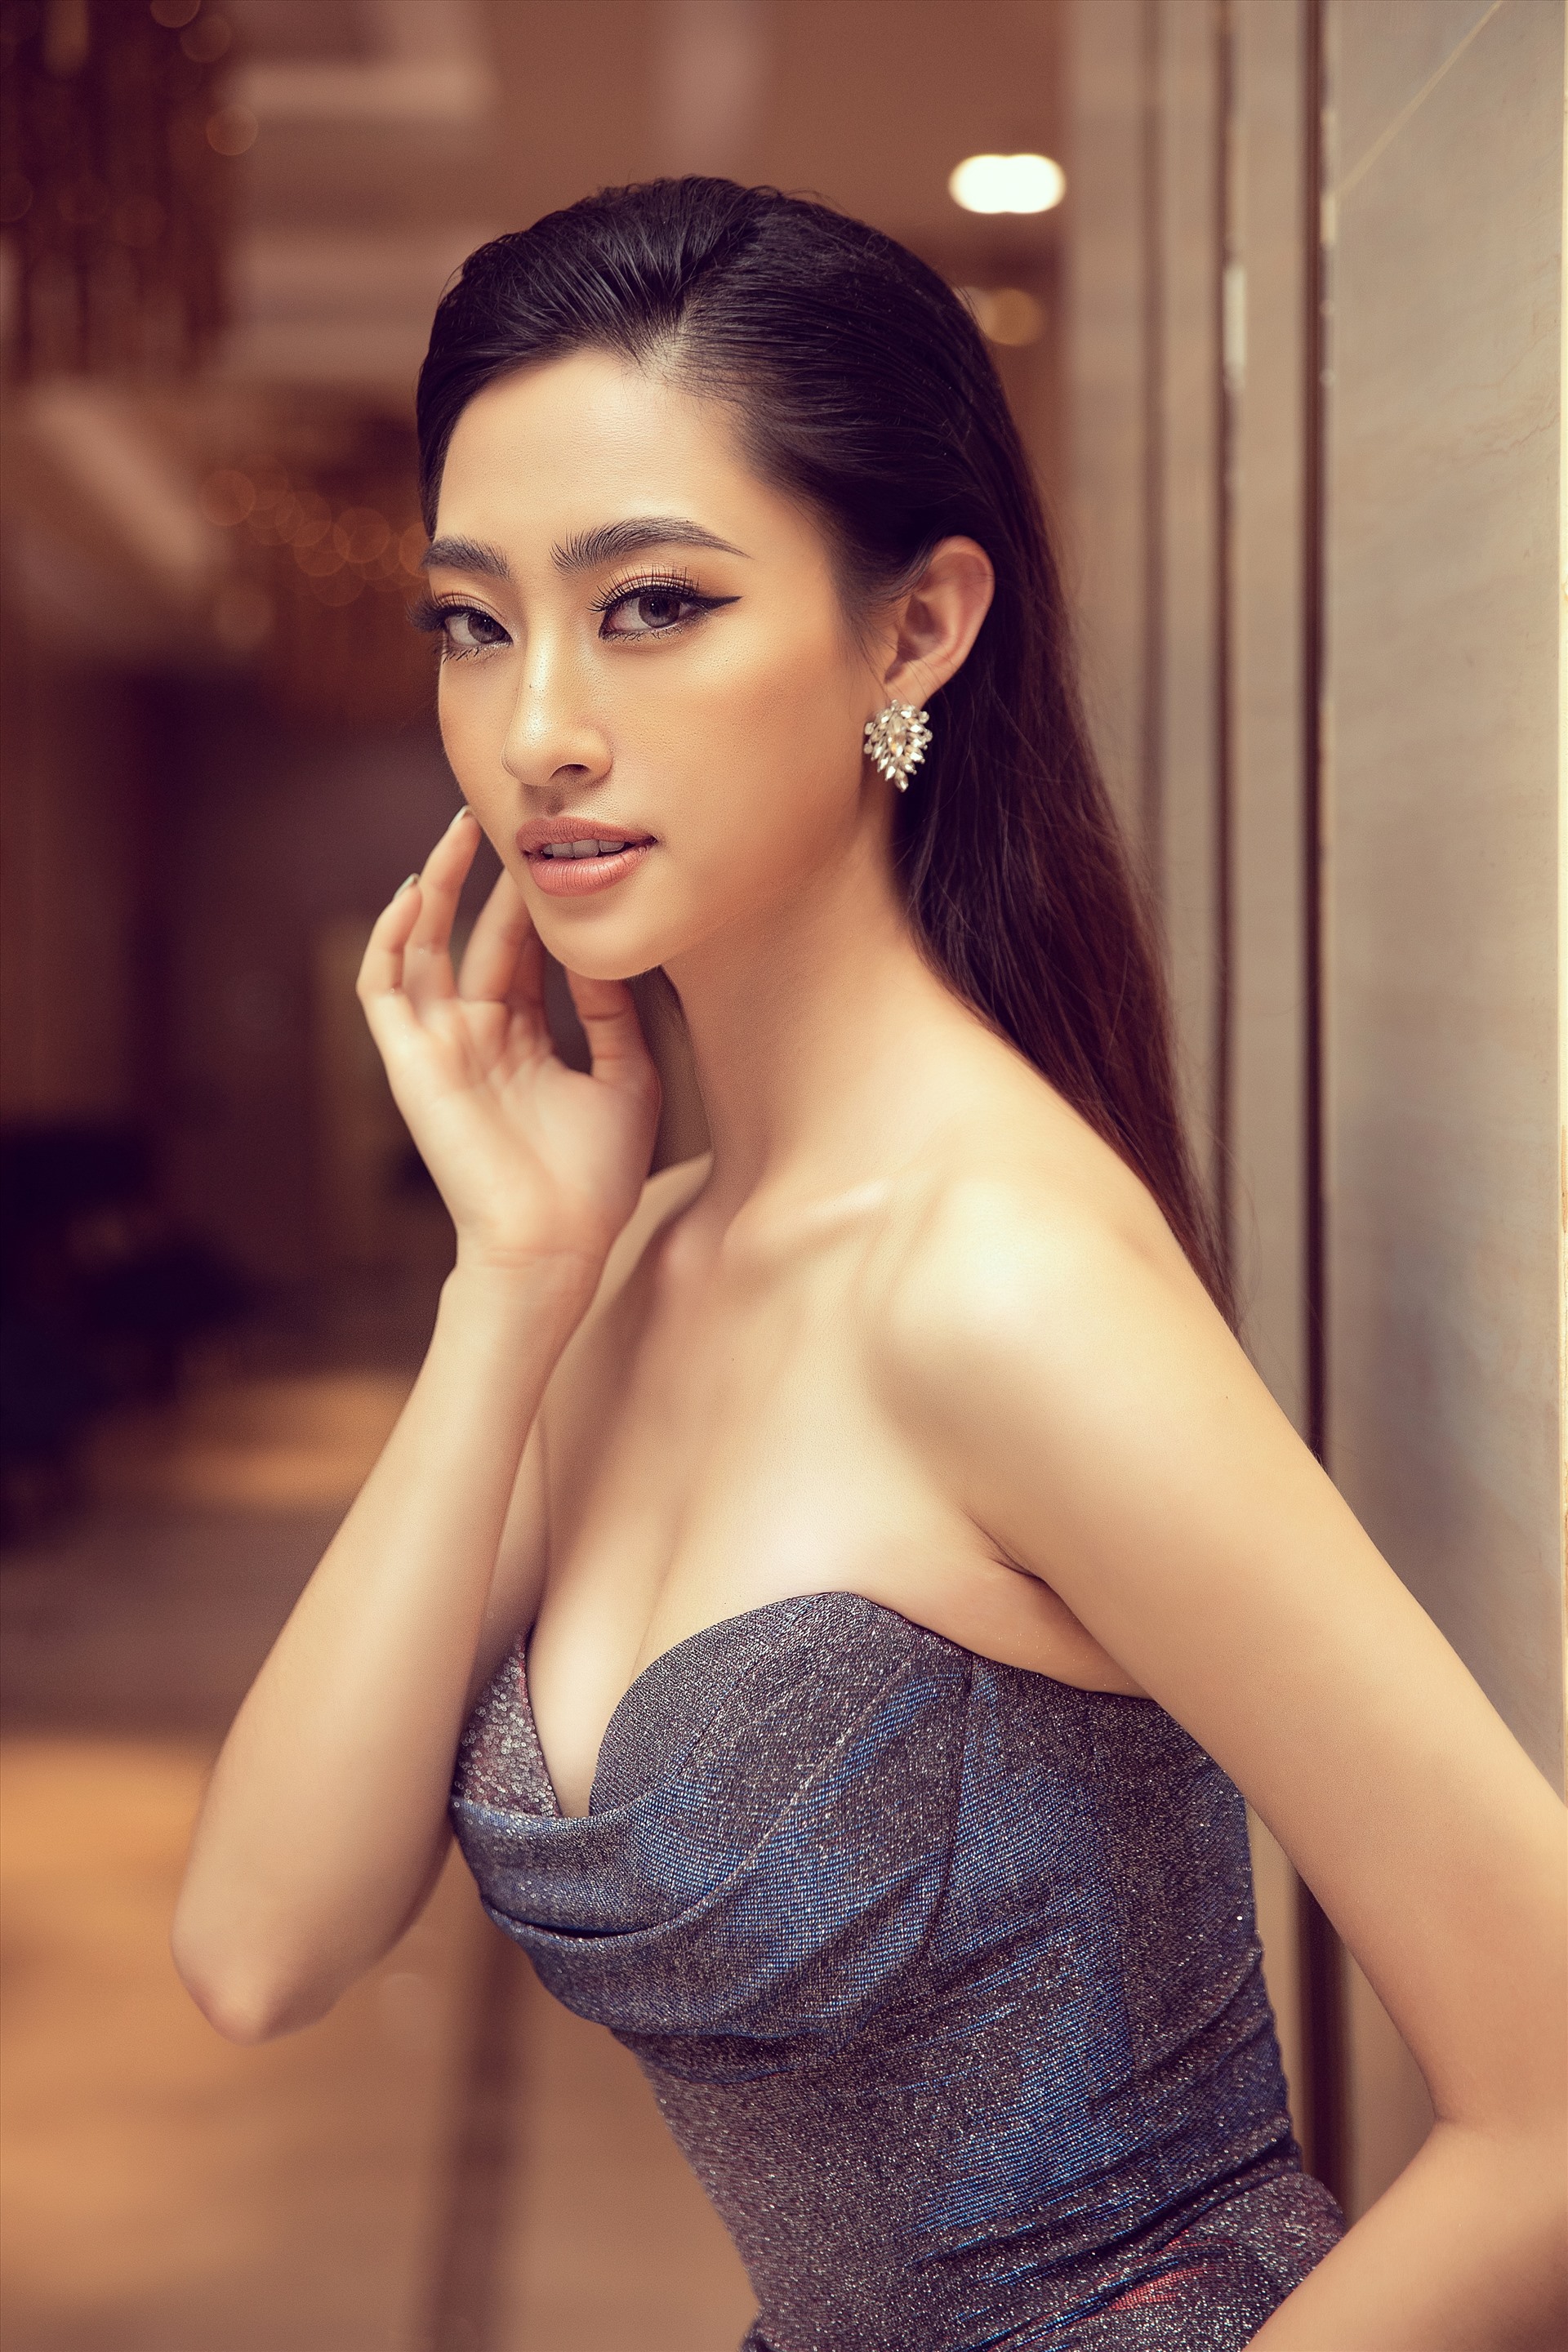 Đặc biệt, sắp tới đây, Hoa hậu Lương Thuỳ Linh sẽ đảm nhiệm vai trò dẫn dắt thử thách “Người đẹp Nhân ái” và “Head to head Challenge” (Đối đầu) tại Hoa hậu Việt Nam 2020. Ảnh: Viết Quý.